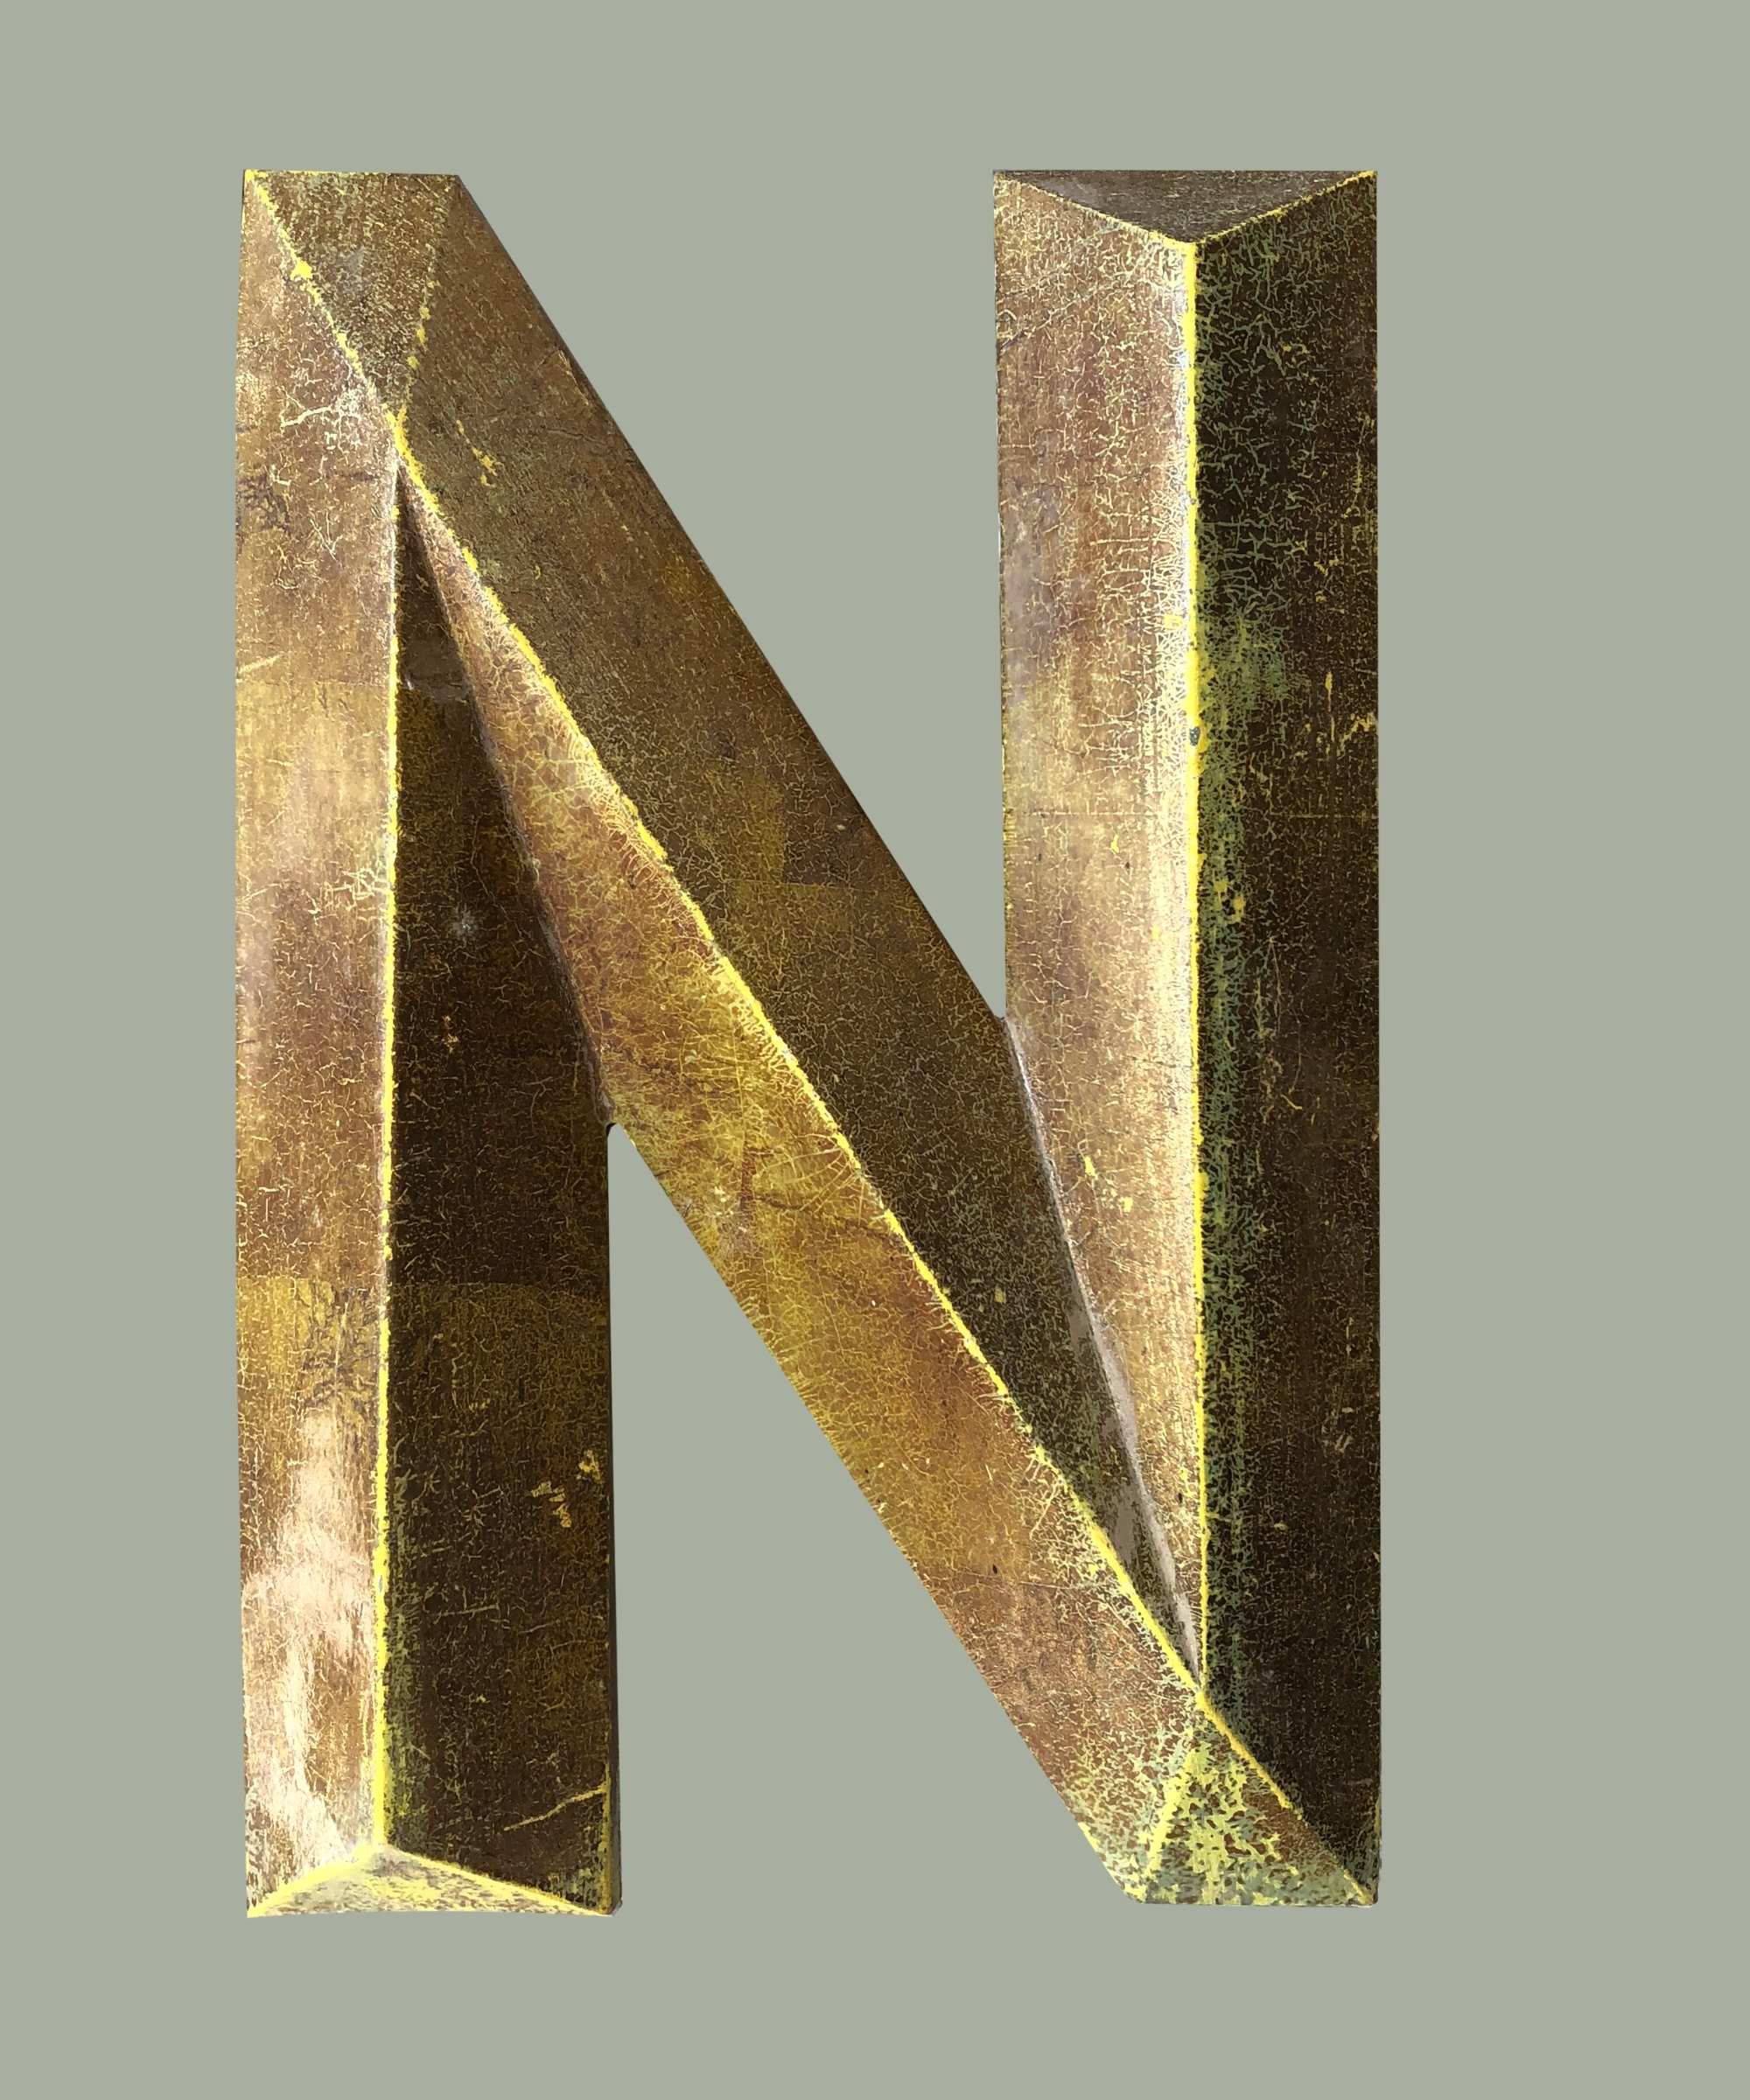 Metall Buchstaben N Stock Vektor Art und mehr Bilder von Metall